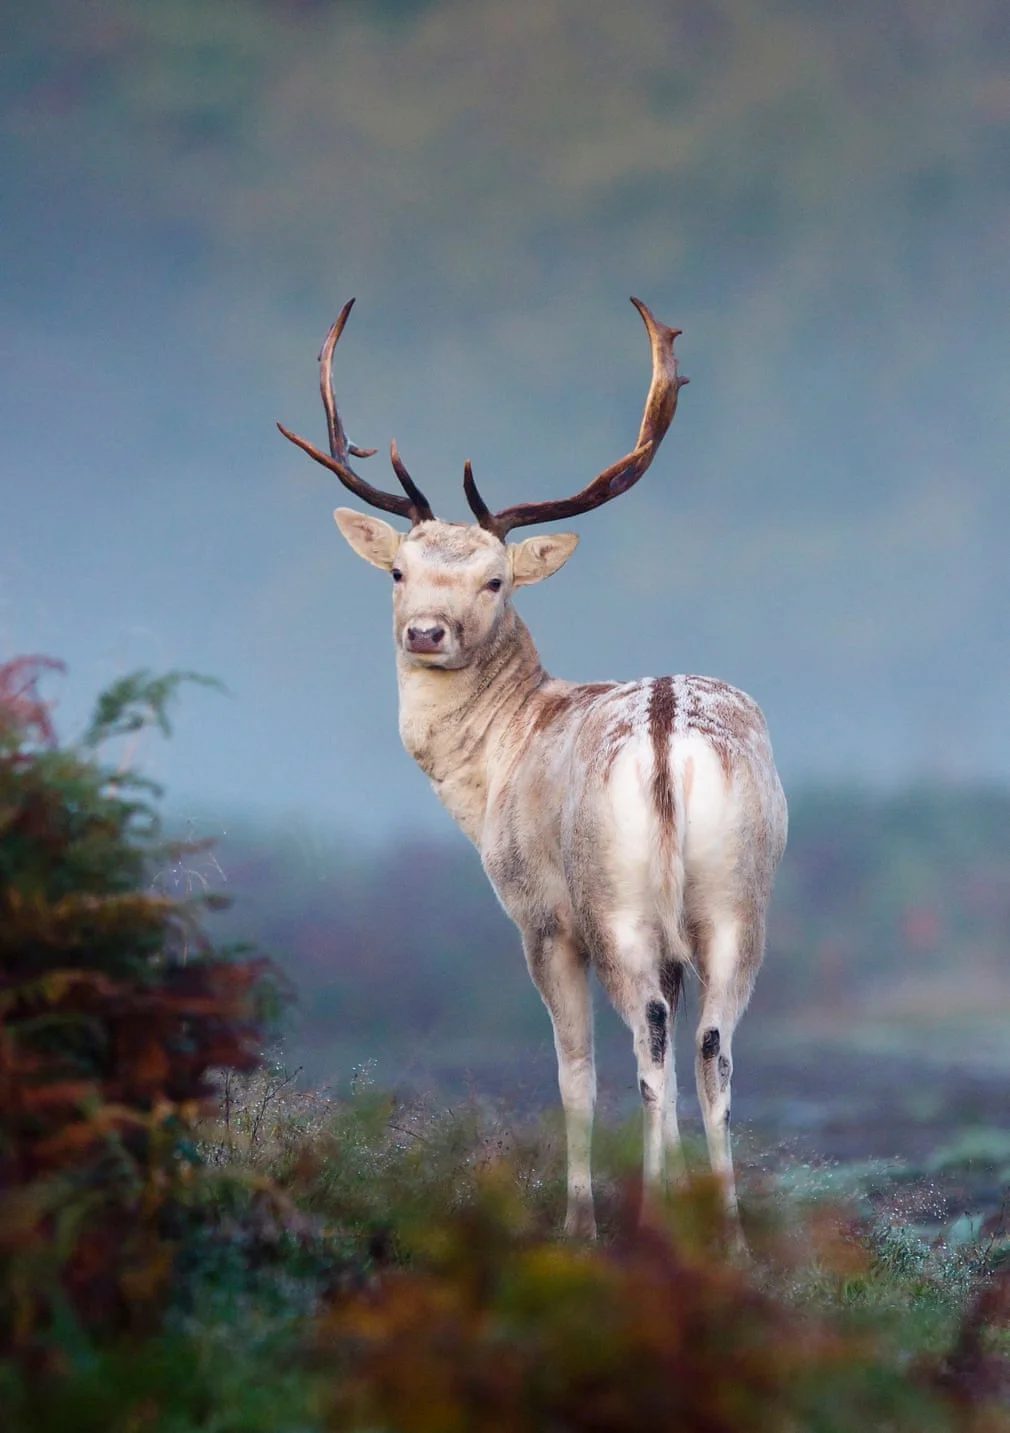 British Wildlife Photography Awards показал лучшие фотографии природы за 10 лет - фото 492779